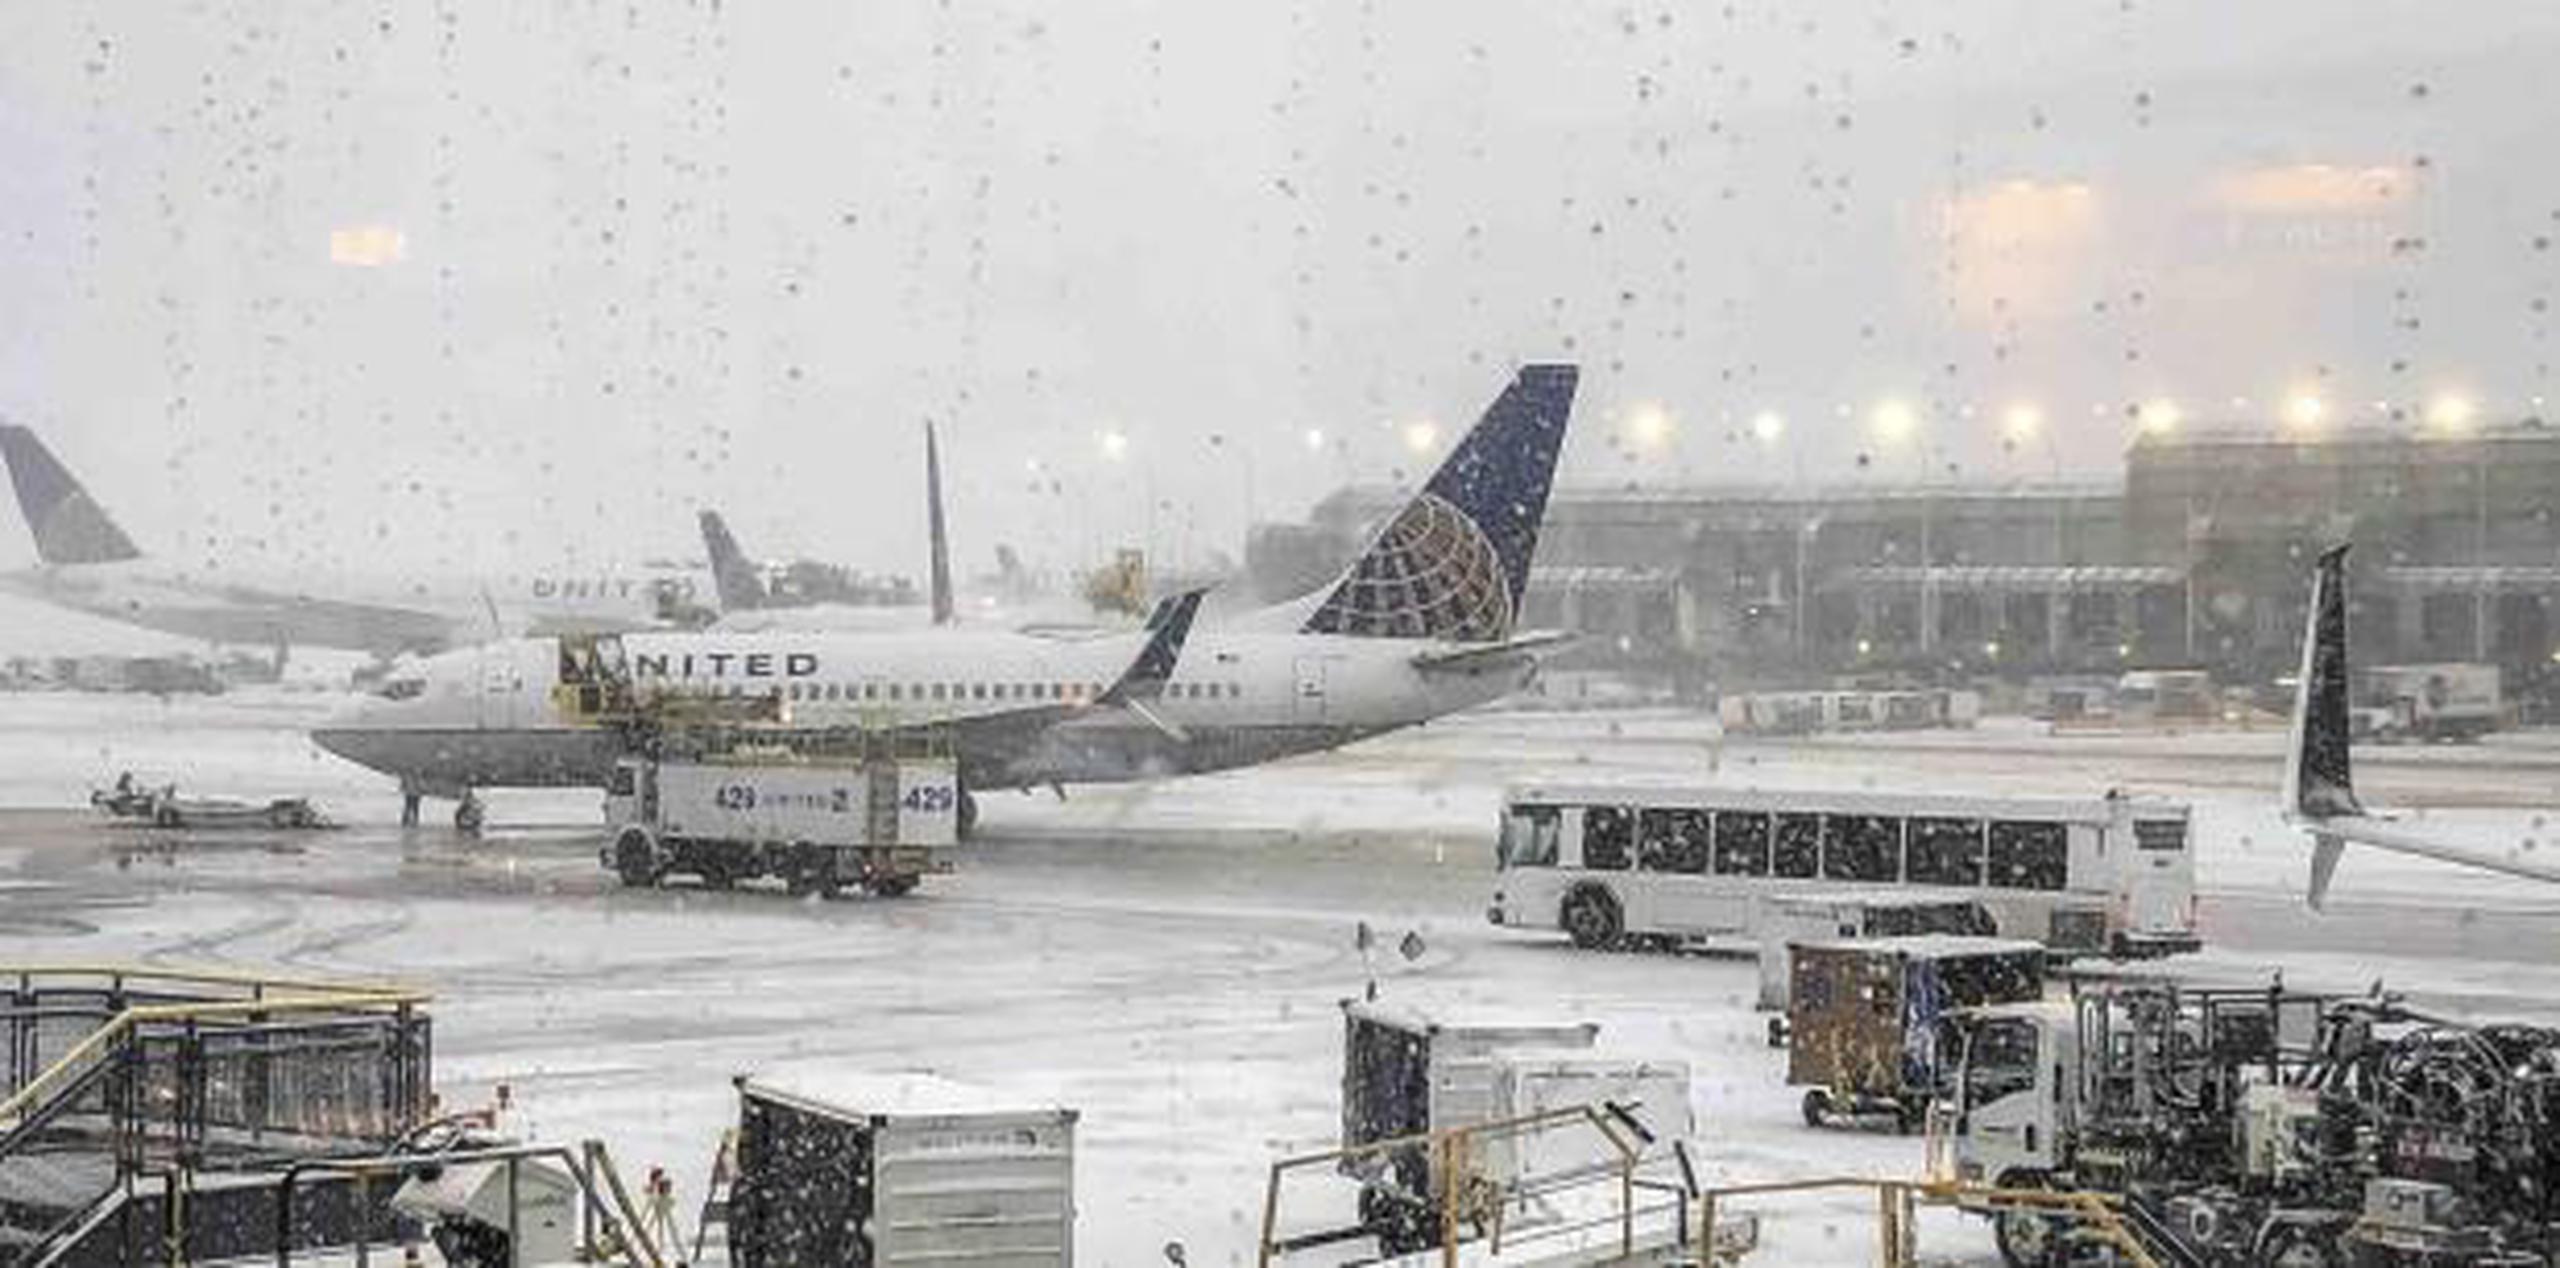 El día de menos tráfico aéreo deberá ser el feriado mismo. (Daryl Van Schouwen / Chicago Sun-Times vía AP)